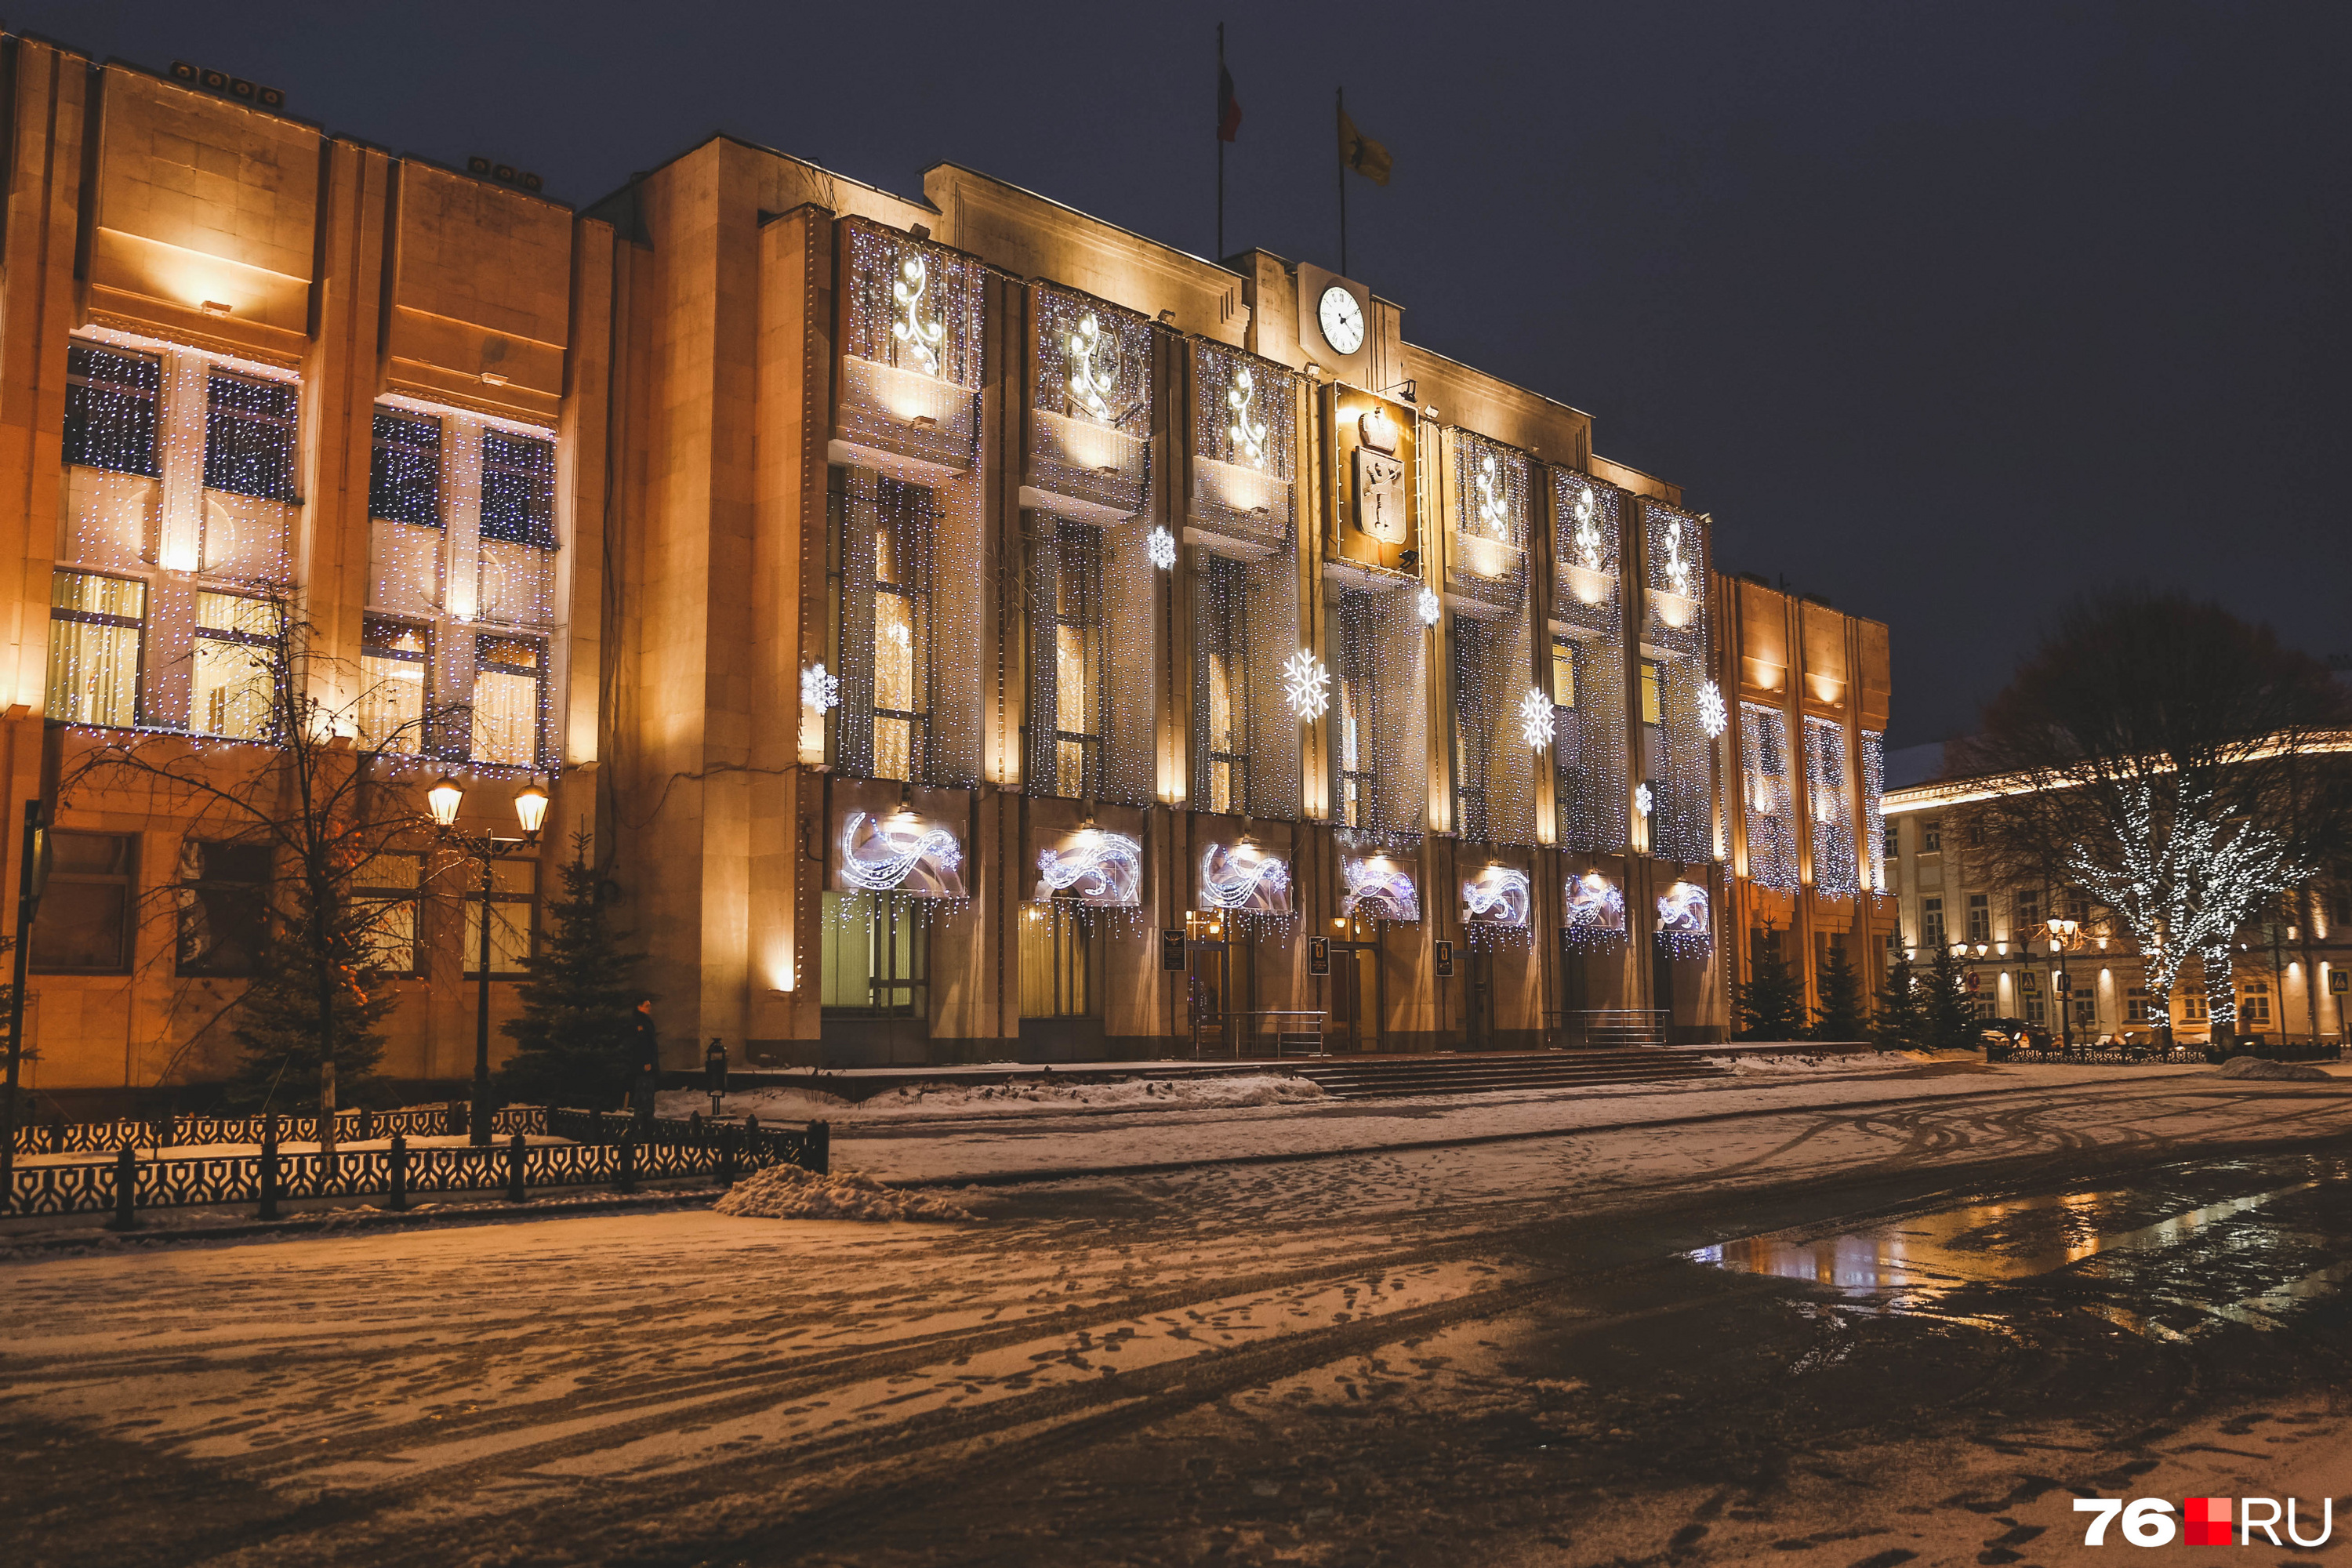 Особенно красочно выглядит здание правительства Ярославской области